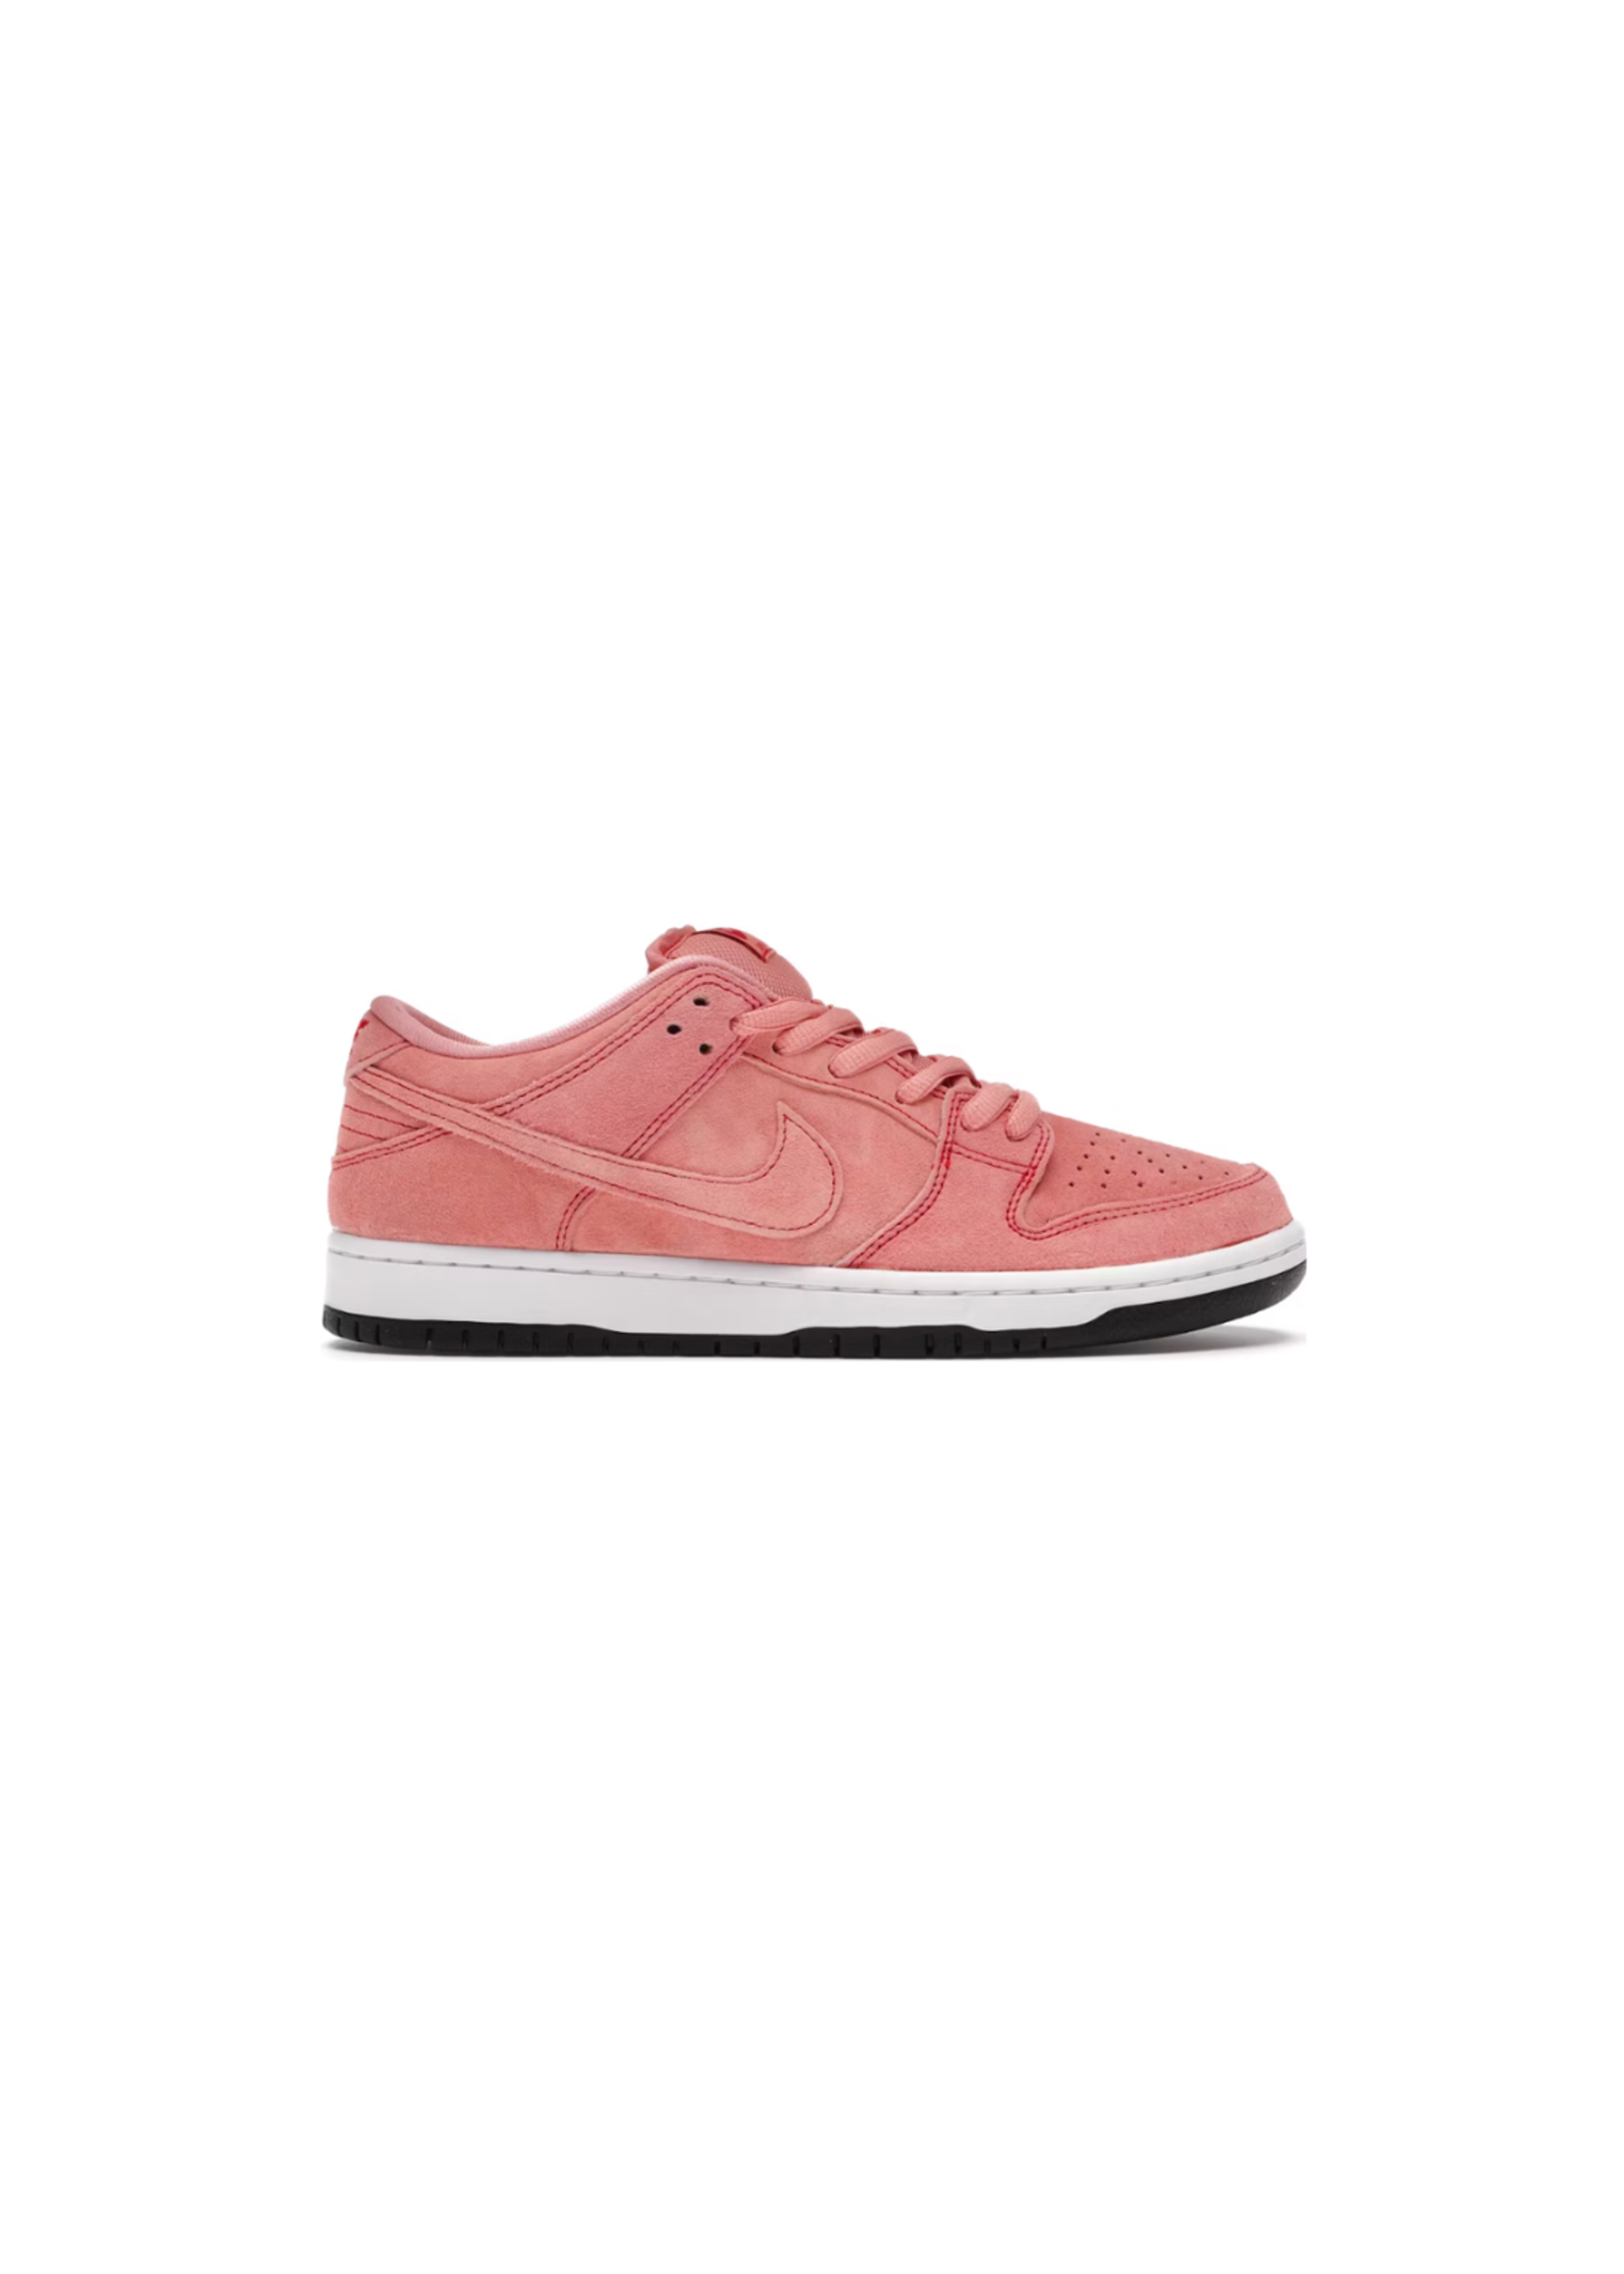 Nike Dunk Low SB Pink Pig